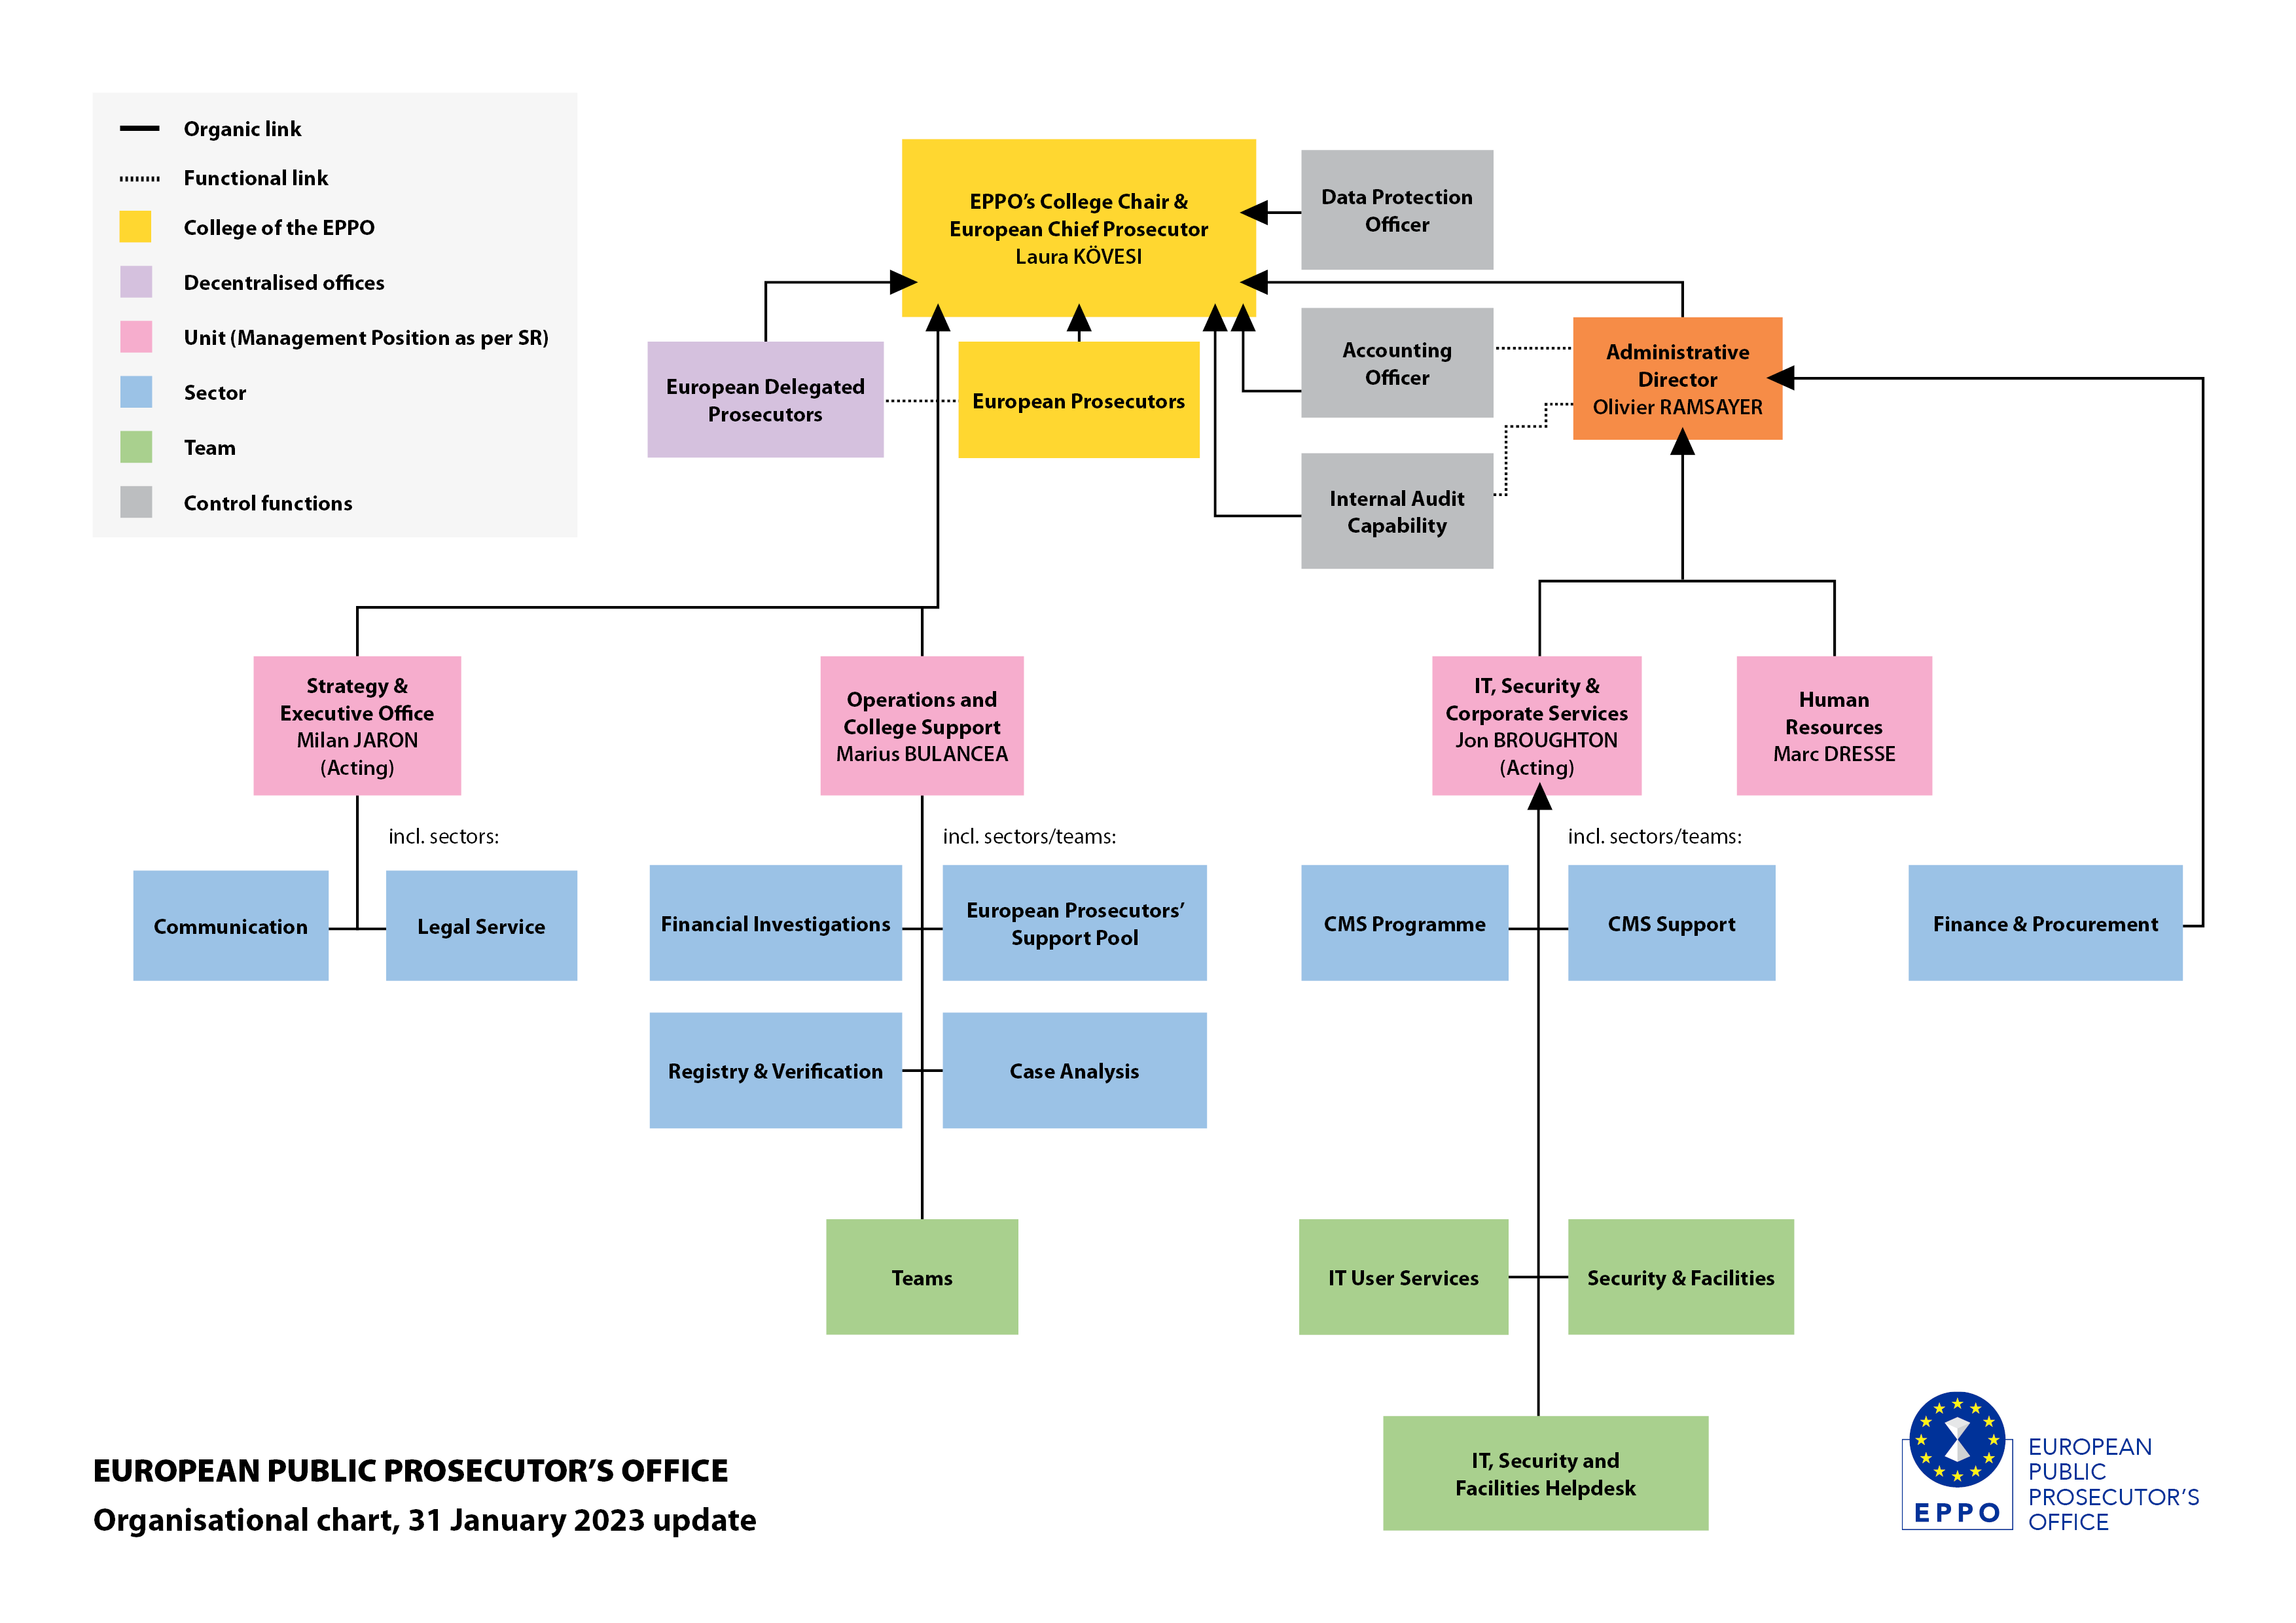 EPPO organisational chart, 31 January update